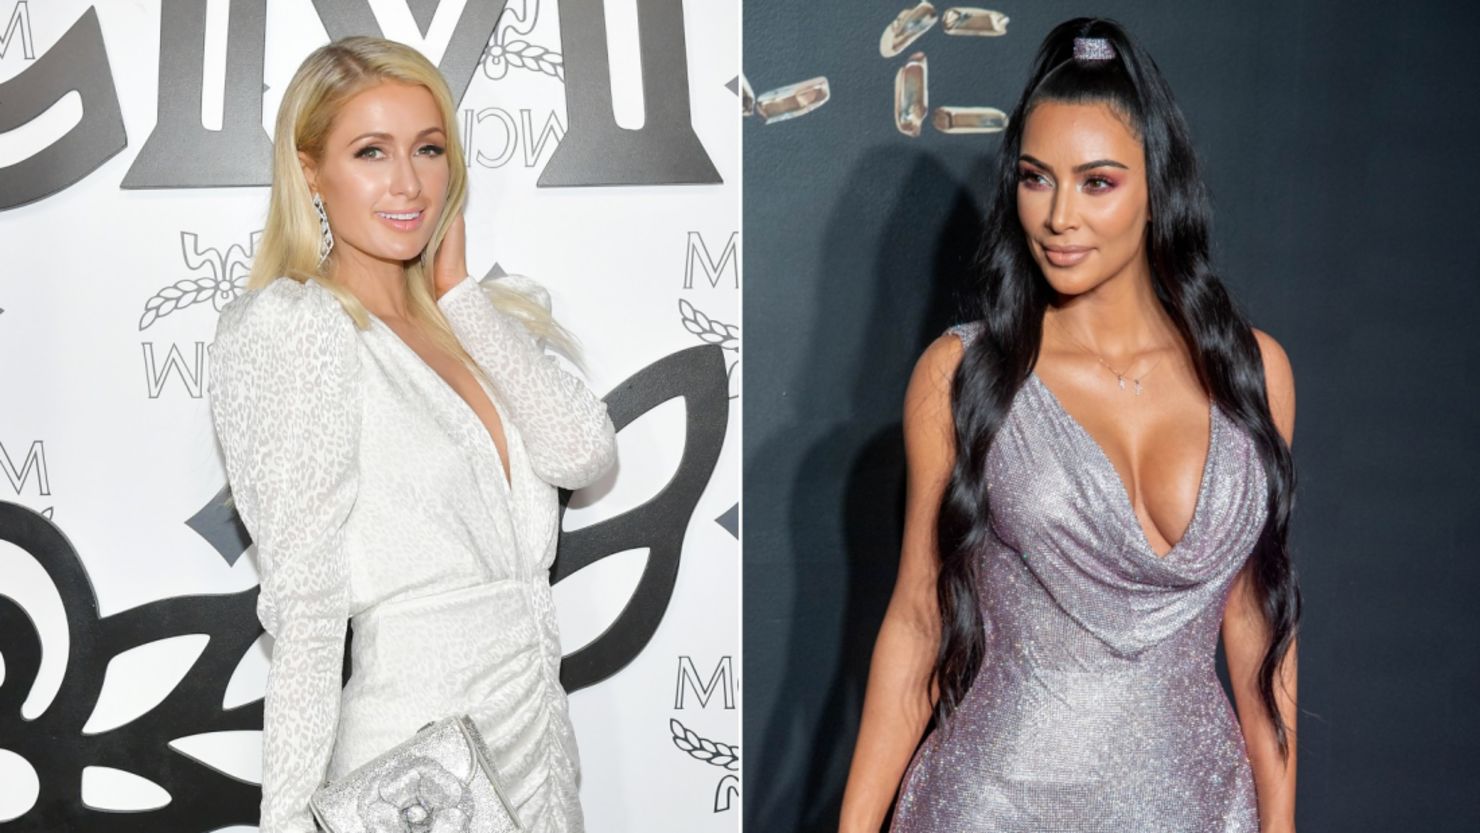 Paris Hilton, left, celebrated her birthday with longtime friend, Kim Kardashian West. 